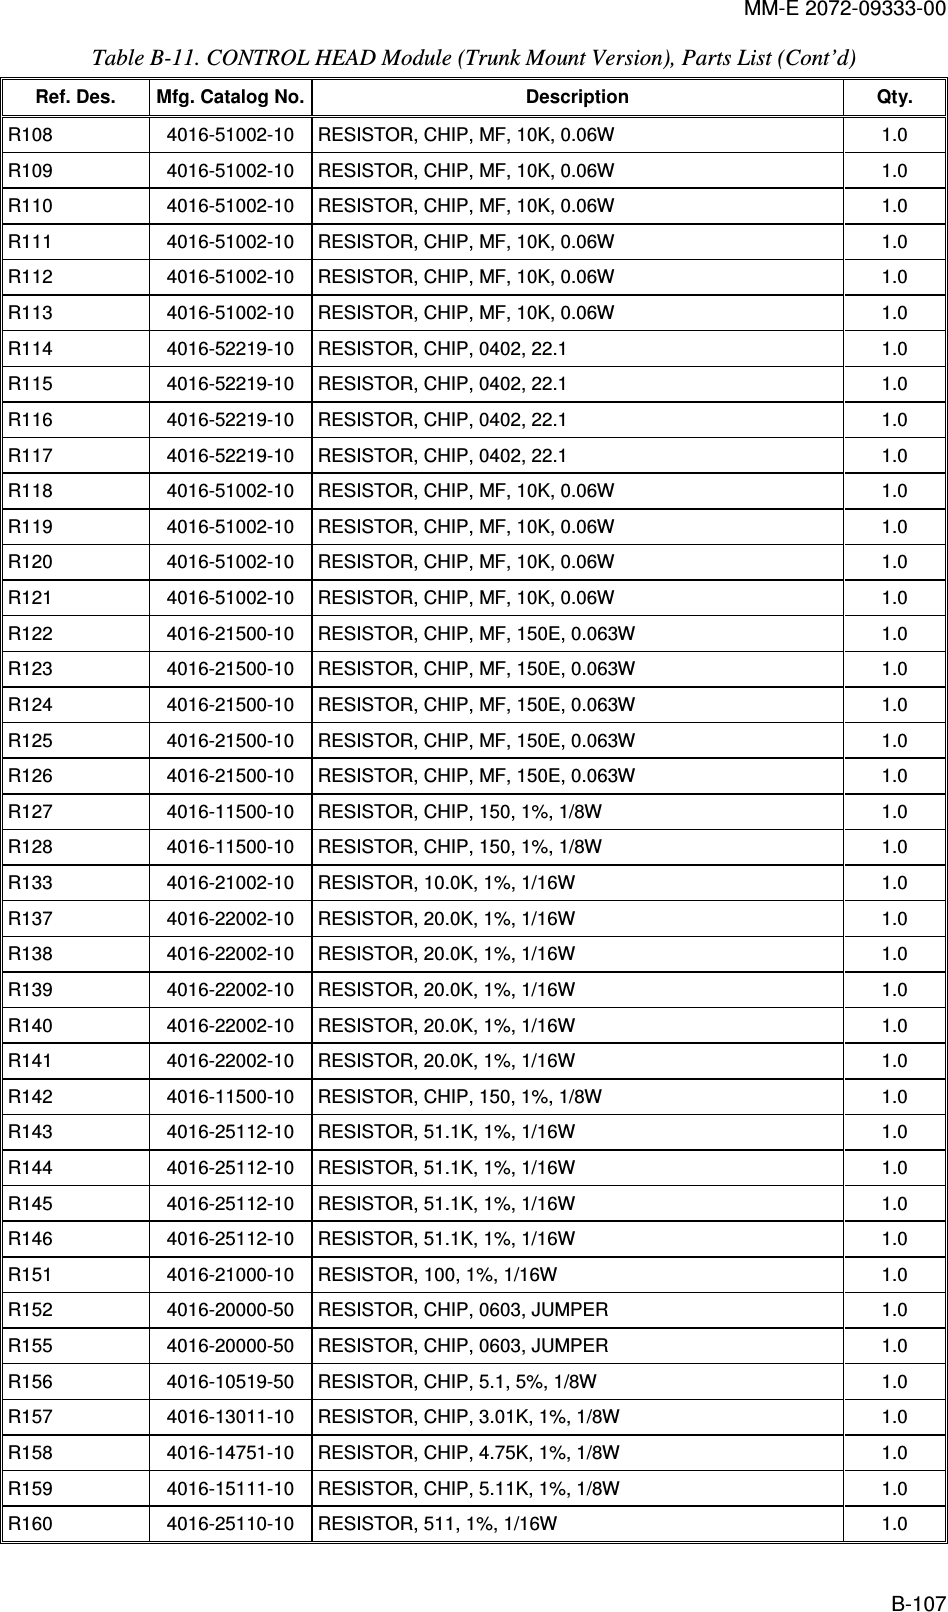 MM-E 2072-09333-00 B-107 Table  B-11. CONTROL HEAD Module (Trunk Mount Version), Parts List (Cont’d)  Ref. Des.  Mfg. Catalog No. Description  Qty. R108   4016-51002-10   RESISTOR, CHIP, MF, 10K, 0.06W  1.0  R109   4016-51002-10   RESISTOR, CHIP, MF, 10K, 0.06W  1.0  R110   4016-51002-10   RESISTOR, CHIP, MF, 10K, 0.06W  1.0  R111   4016-51002-10   RESISTOR, CHIP, MF, 10K, 0.06W  1.0  R112   4016-51002-10   RESISTOR, CHIP, MF, 10K, 0.06W  1.0  R113   4016-51002-10   RESISTOR, CHIP, MF, 10K, 0.06W  1.0  R114   4016-52219-10   RESISTOR, CHIP, 0402, 22.1  1.0  R115   4016-52219-10   RESISTOR, CHIP, 0402, 22.1  1.0  R116   4016-52219-10   RESISTOR, CHIP, 0402, 22.1  1.0  R117   4016-52219-10   RESISTOR, CHIP, 0402, 22.1  1.0  R118   4016-51002-10   RESISTOR, CHIP, MF, 10K, 0.06W  1.0  R119   4016-51002-10   RESISTOR, CHIP, MF, 10K, 0.06W  1.0  R120   4016-51002-10   RESISTOR, CHIP, MF, 10K, 0.06W  1.0  R121   4016-51002-10   RESISTOR, CHIP, MF, 10K, 0.06W  1.0  R122   4016-21500-10   RESISTOR, CHIP, MF, 150E, 0.063W  1.0  R123   4016-21500-10   RESISTOR, CHIP, MF, 150E, 0.063W  1.0  R124   4016-21500-10   RESISTOR, CHIP, MF, 150E, 0.063W  1.0  R125   4016-21500-10   RESISTOR, CHIP, MF, 150E, 0.063W  1.0  R126   4016-21500-10   RESISTOR, CHIP, MF, 150E, 0.063W  1.0  R127   4016-11500-10   RESISTOR, CHIP, 150, 1%, 1/8W  1.0  R128   4016-11500-10   RESISTOR, CHIP, 150, 1%, 1/8W  1.0  R133   4016-21002-10   RESISTOR, 10.0K, 1%, 1/16W  1.0  R137   4016-22002-10   RESISTOR, 20.0K, 1%, 1/16W  1.0  R138   4016-22002-10   RESISTOR, 20.0K, 1%, 1/16W  1.0  R139   4016-22002-10   RESISTOR, 20.0K, 1%, 1/16W  1.0  R140   4016-22002-10   RESISTOR, 20.0K, 1%, 1/16W  1.0  R141   4016-22002-10   RESISTOR, 20.0K, 1%, 1/16W  1.0  R142   4016-11500-10   RESISTOR, CHIP, 150, 1%, 1/8W  1.0  R143   4016-25112-10   RESISTOR, 51.1K, 1%, 1/16W  1.0  R144   4016-25112-10   RESISTOR, 51.1K, 1%, 1/16W  1.0  R145   4016-25112-10   RESISTOR, 51.1K, 1%, 1/16W  1.0  R146   4016-25112-10   RESISTOR, 51.1K, 1%, 1/16W  1.0  R151   4016-21000-10   RESISTOR, 100, 1%, 1/16W  1.0  R152   4016-20000-50   RESISTOR, CHIP, 0603, JUMPER  1.0  R155   4016-20000-50   RESISTOR, CHIP, 0603, JUMPER  1.0  R156   4016-10519-50   RESISTOR, CHIP, 5.1, 5%, 1/8W  1.0  R157   4016-13011-10   RESISTOR, CHIP, 3.01K, 1%, 1/8W  1.0  R158   4016-14751-10   RESISTOR, CHIP, 4.75K, 1%, 1/8W  1.0  R159   4016-15111-10   RESISTOR, CHIP, 5.11K, 1%, 1/8W  1.0  R160   4016-25110-10   RESISTOR, 511, 1%, 1/16W  1.0  